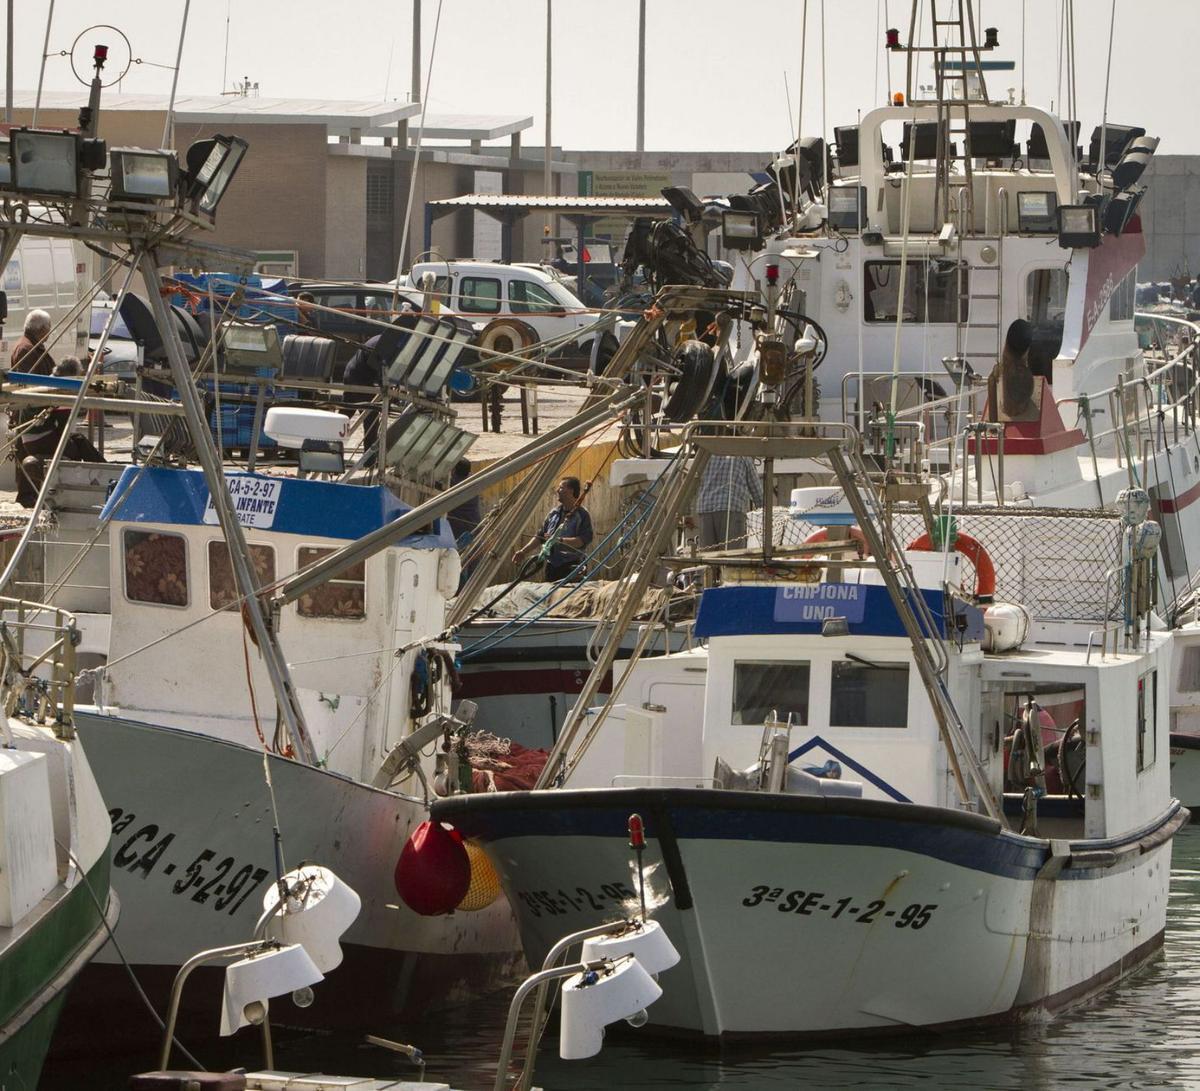 L’advocada de la UE defensa anul·lar l’acord de pesca amb el Marroc